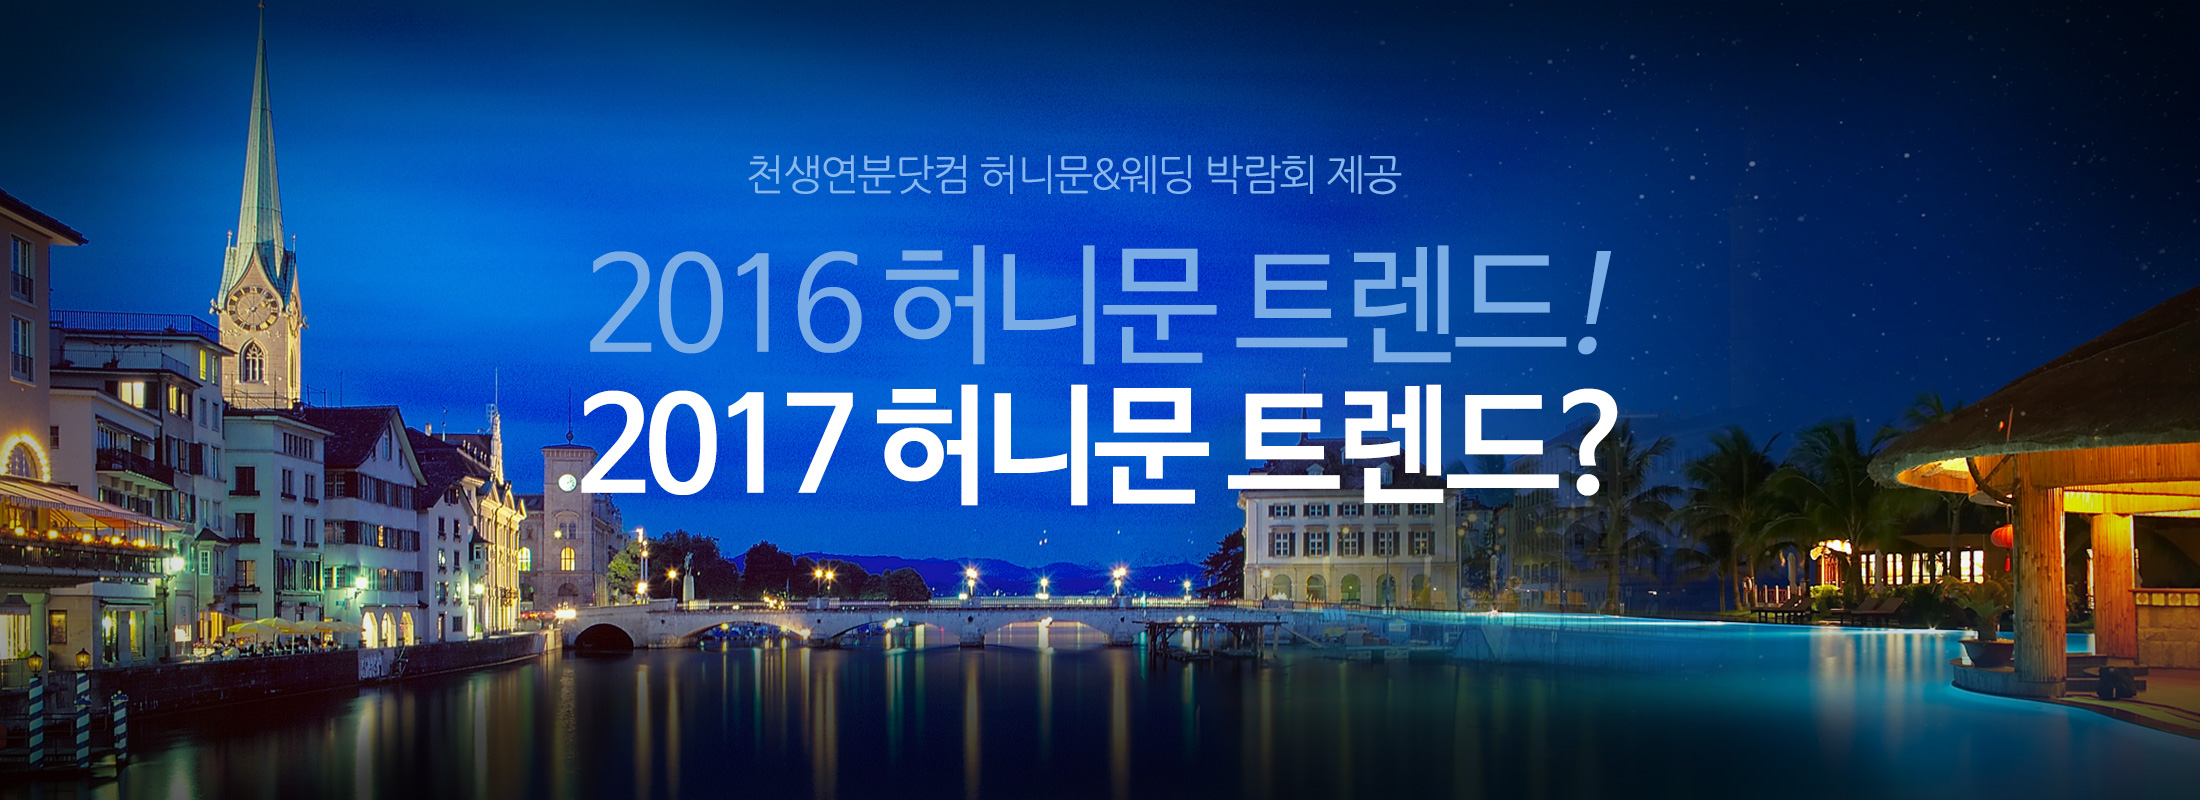 천생연분닷컴이 말하는 2016년 허니문은?